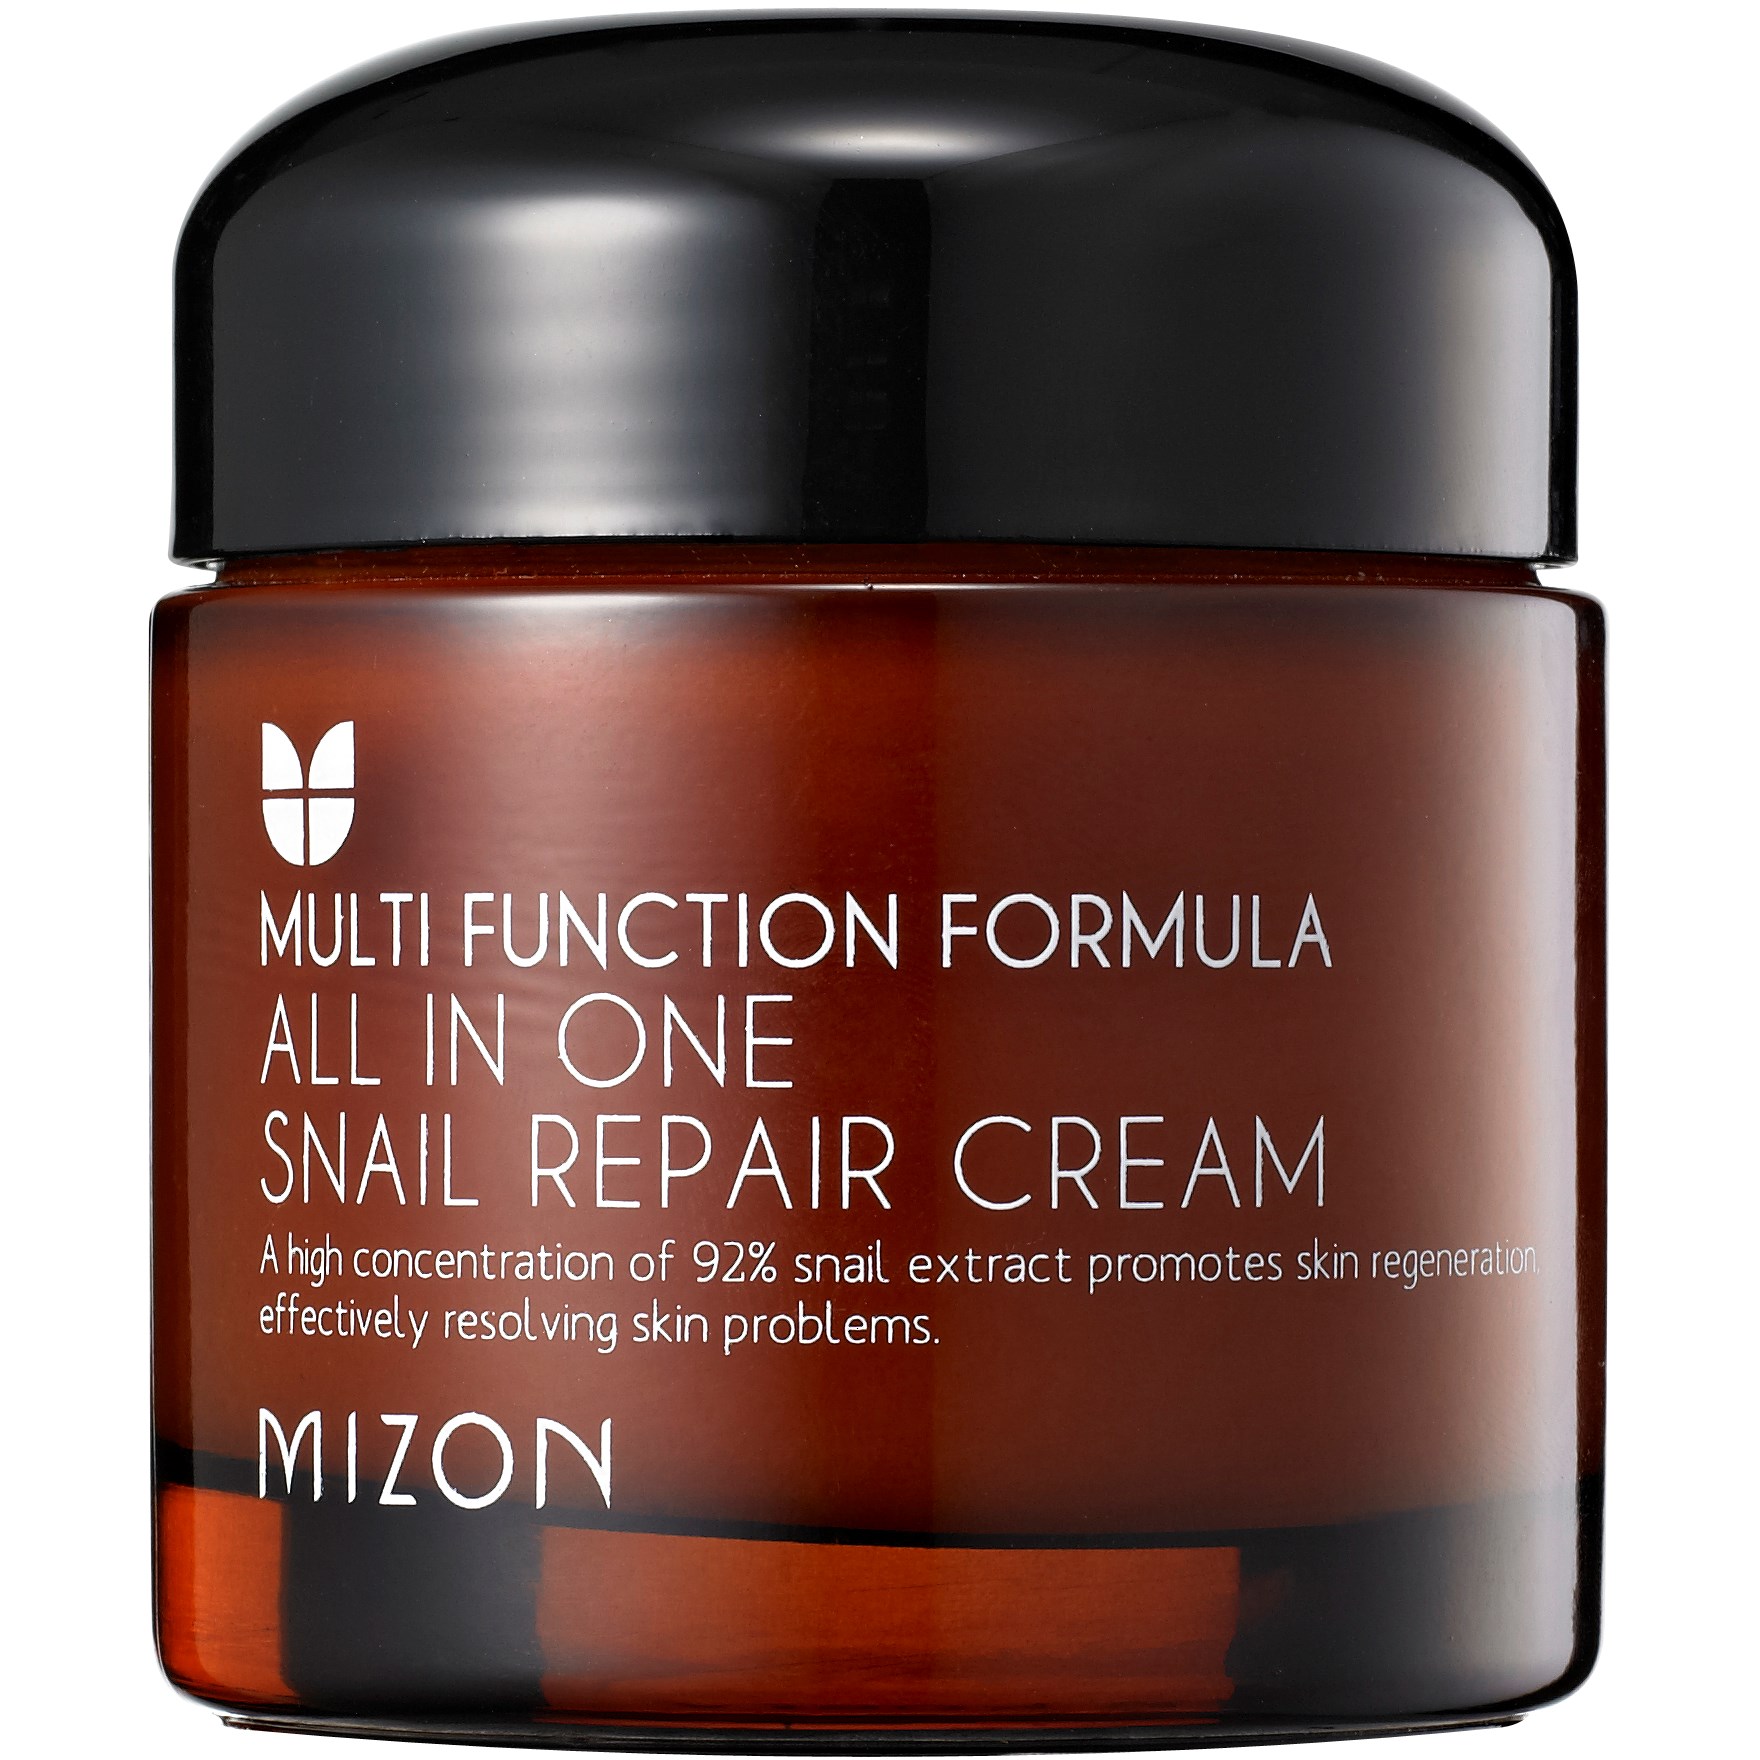 Mizon All In One Snail Repair Cream 75 ml